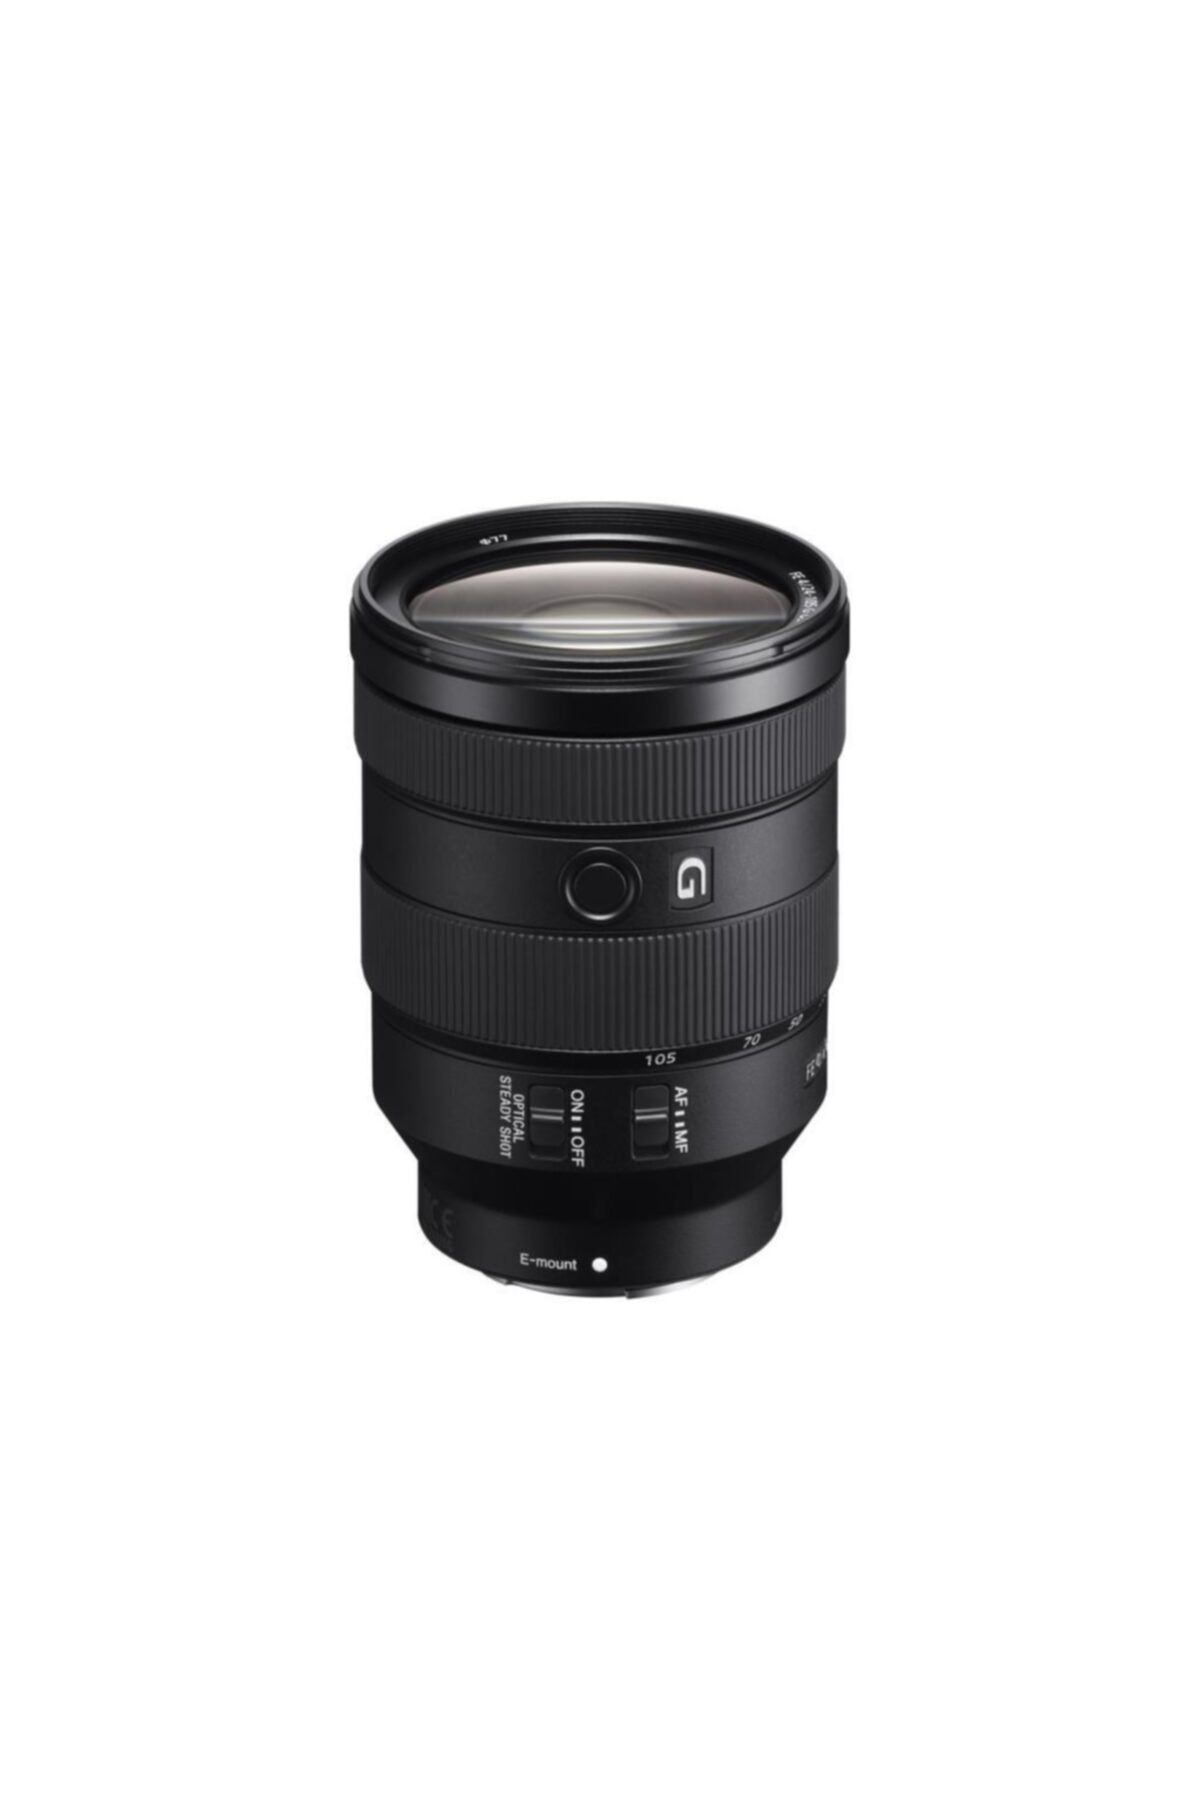 Sony Sel-24105g Fe 24-105mm F/4 G Oss Lens